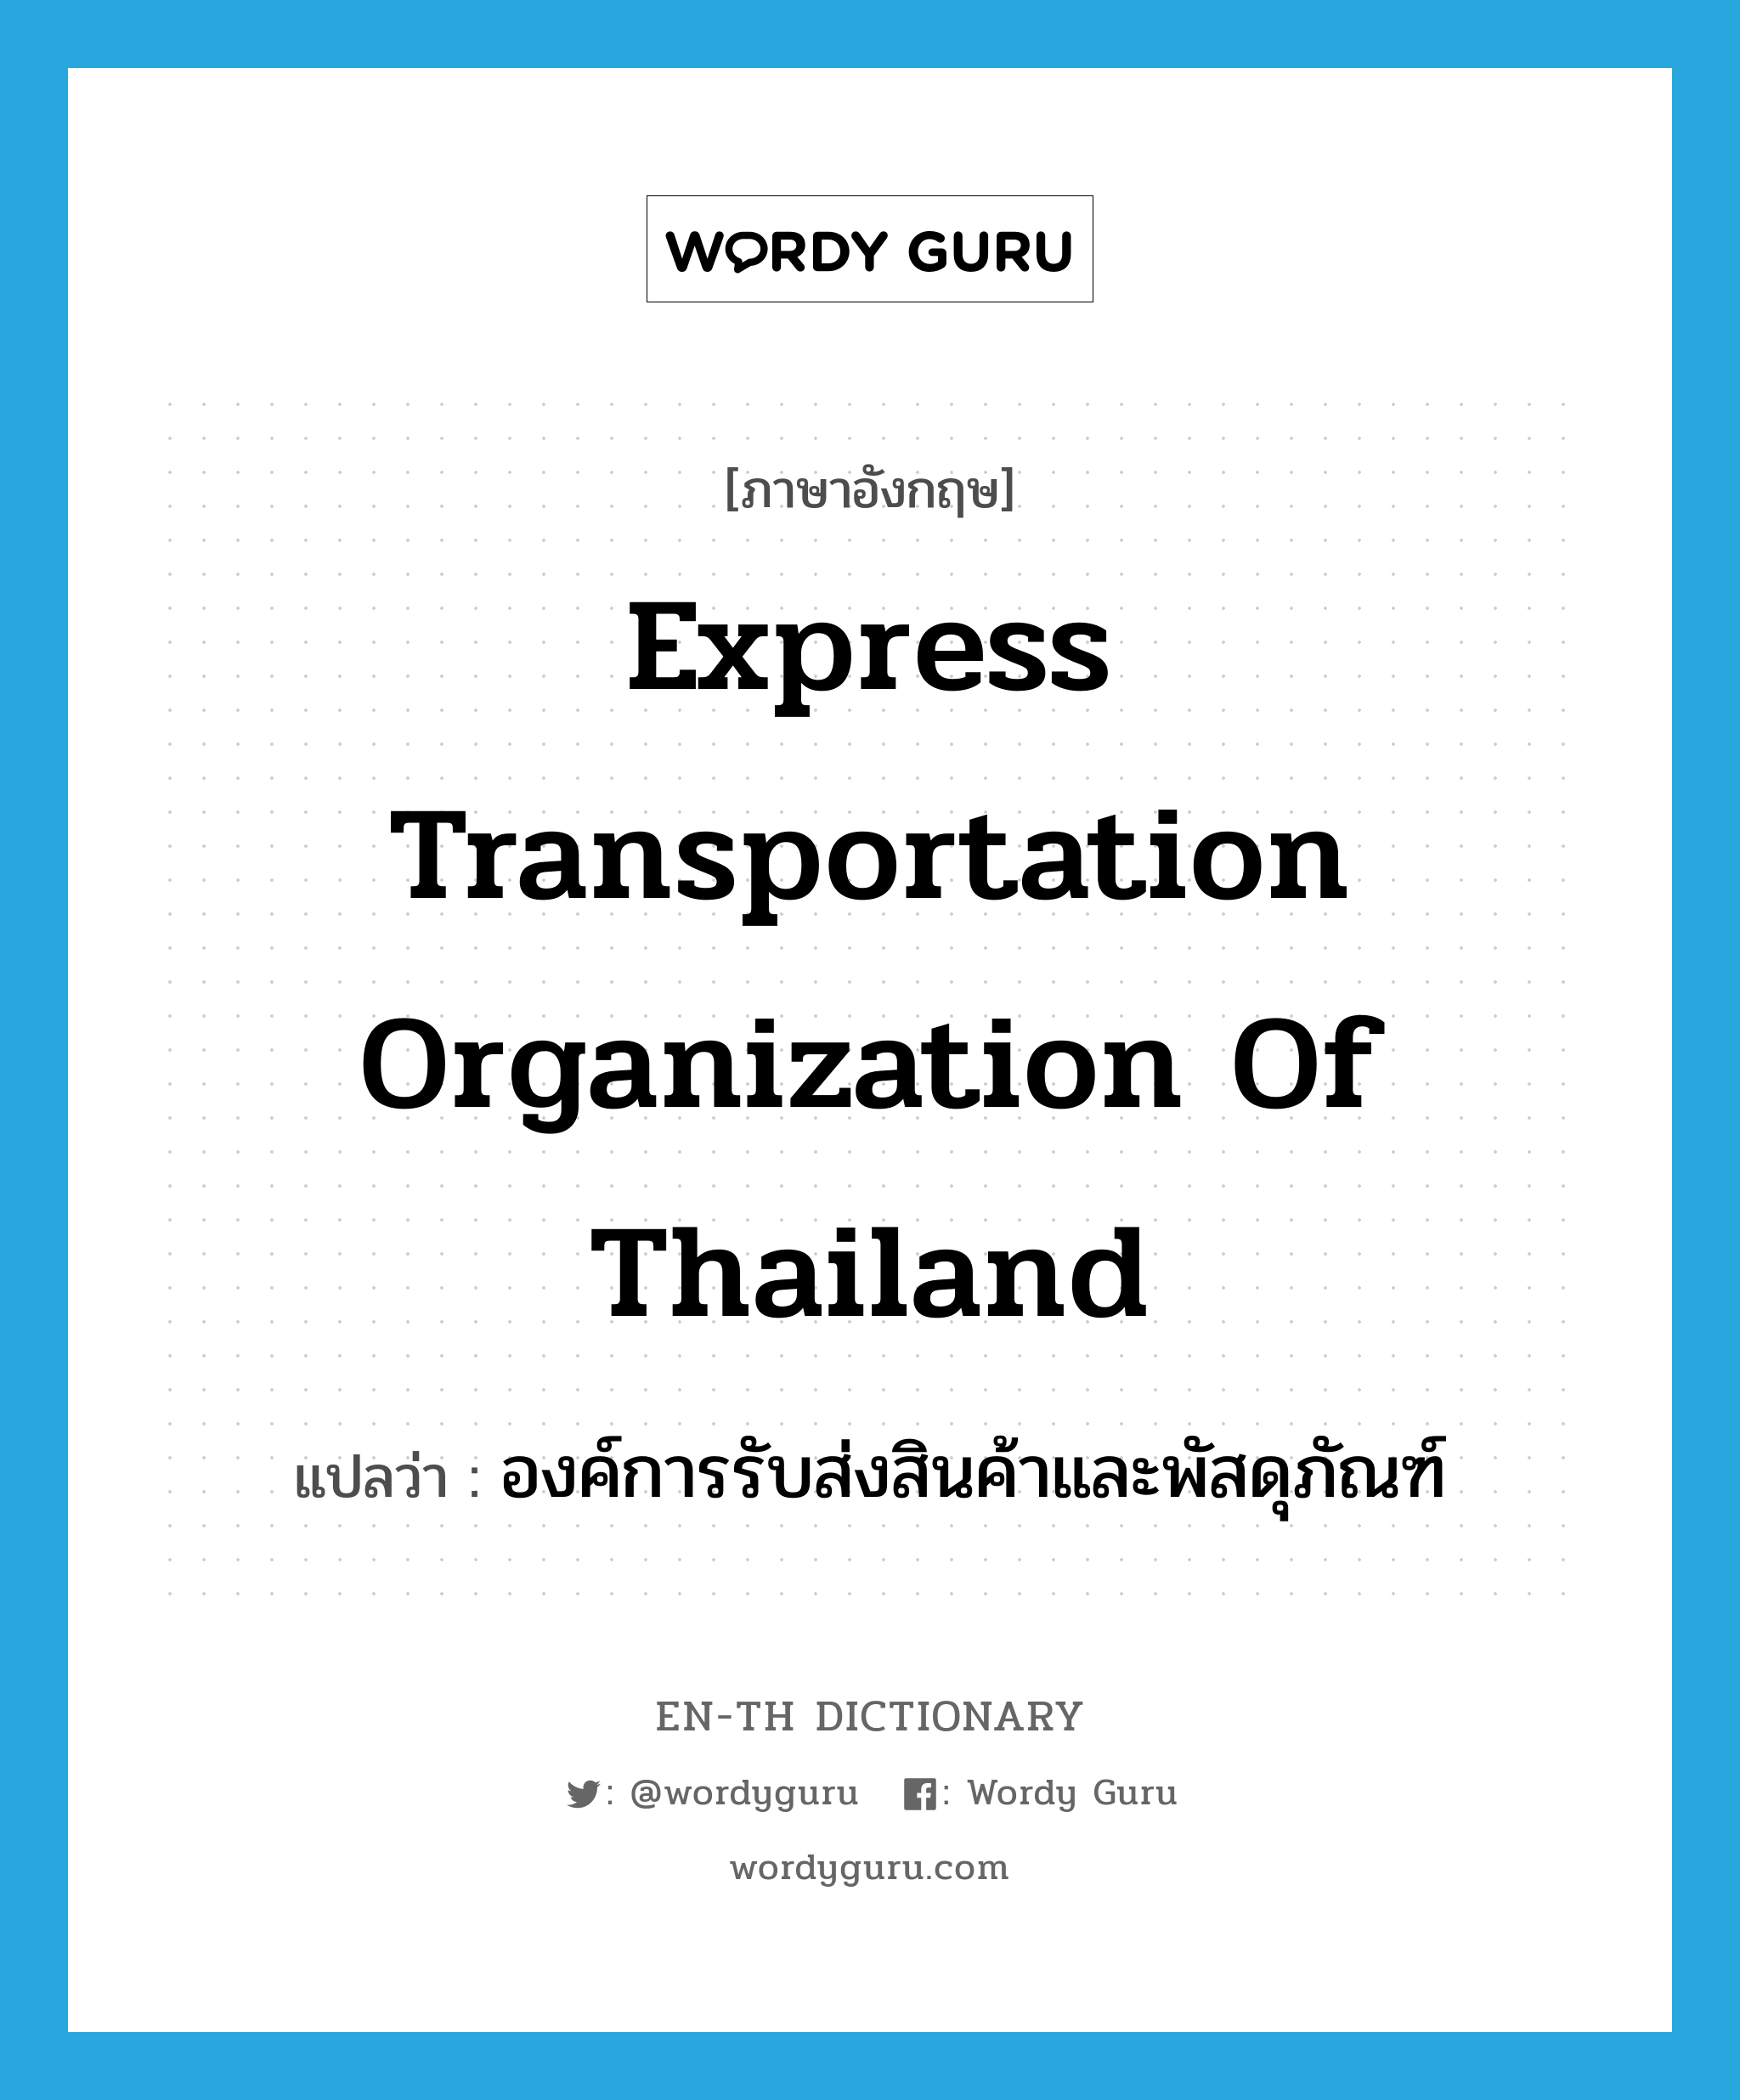 องค์การรับส่งสินค้าและพัสดุภัณฑ์ ภาษาอังกฤษ?, คำศัพท์ภาษาอังกฤษ องค์การรับส่งสินค้าและพัสดุภัณฑ์ แปลว่า Express Transportation Organization of Thailand ประเภท N หมวด N